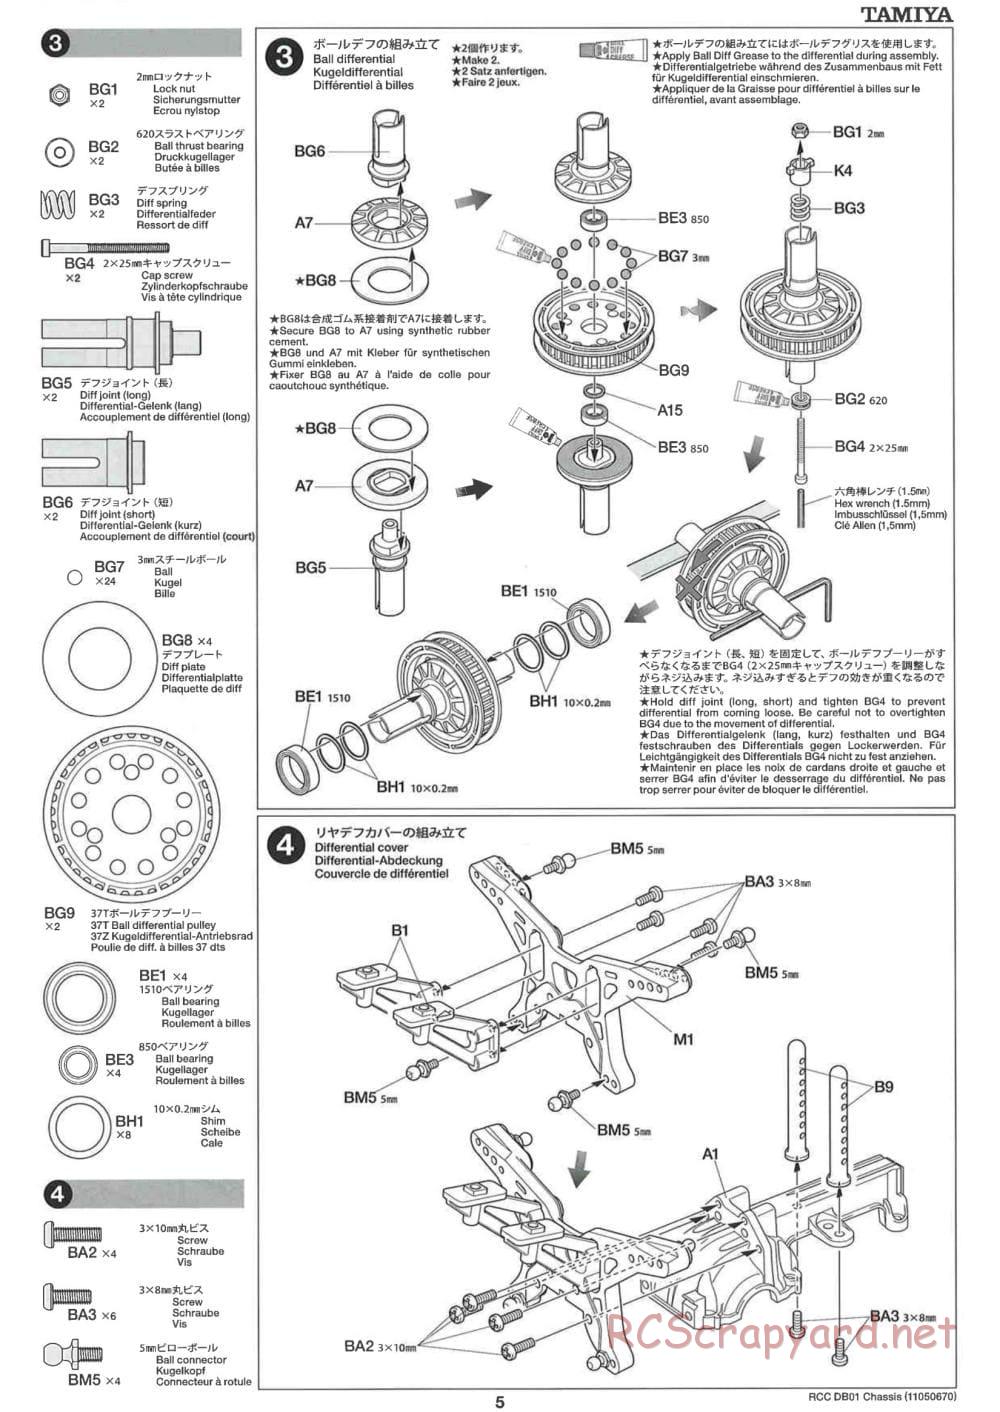 Tamiya - DB-01 Chassis - Manual - Page 5